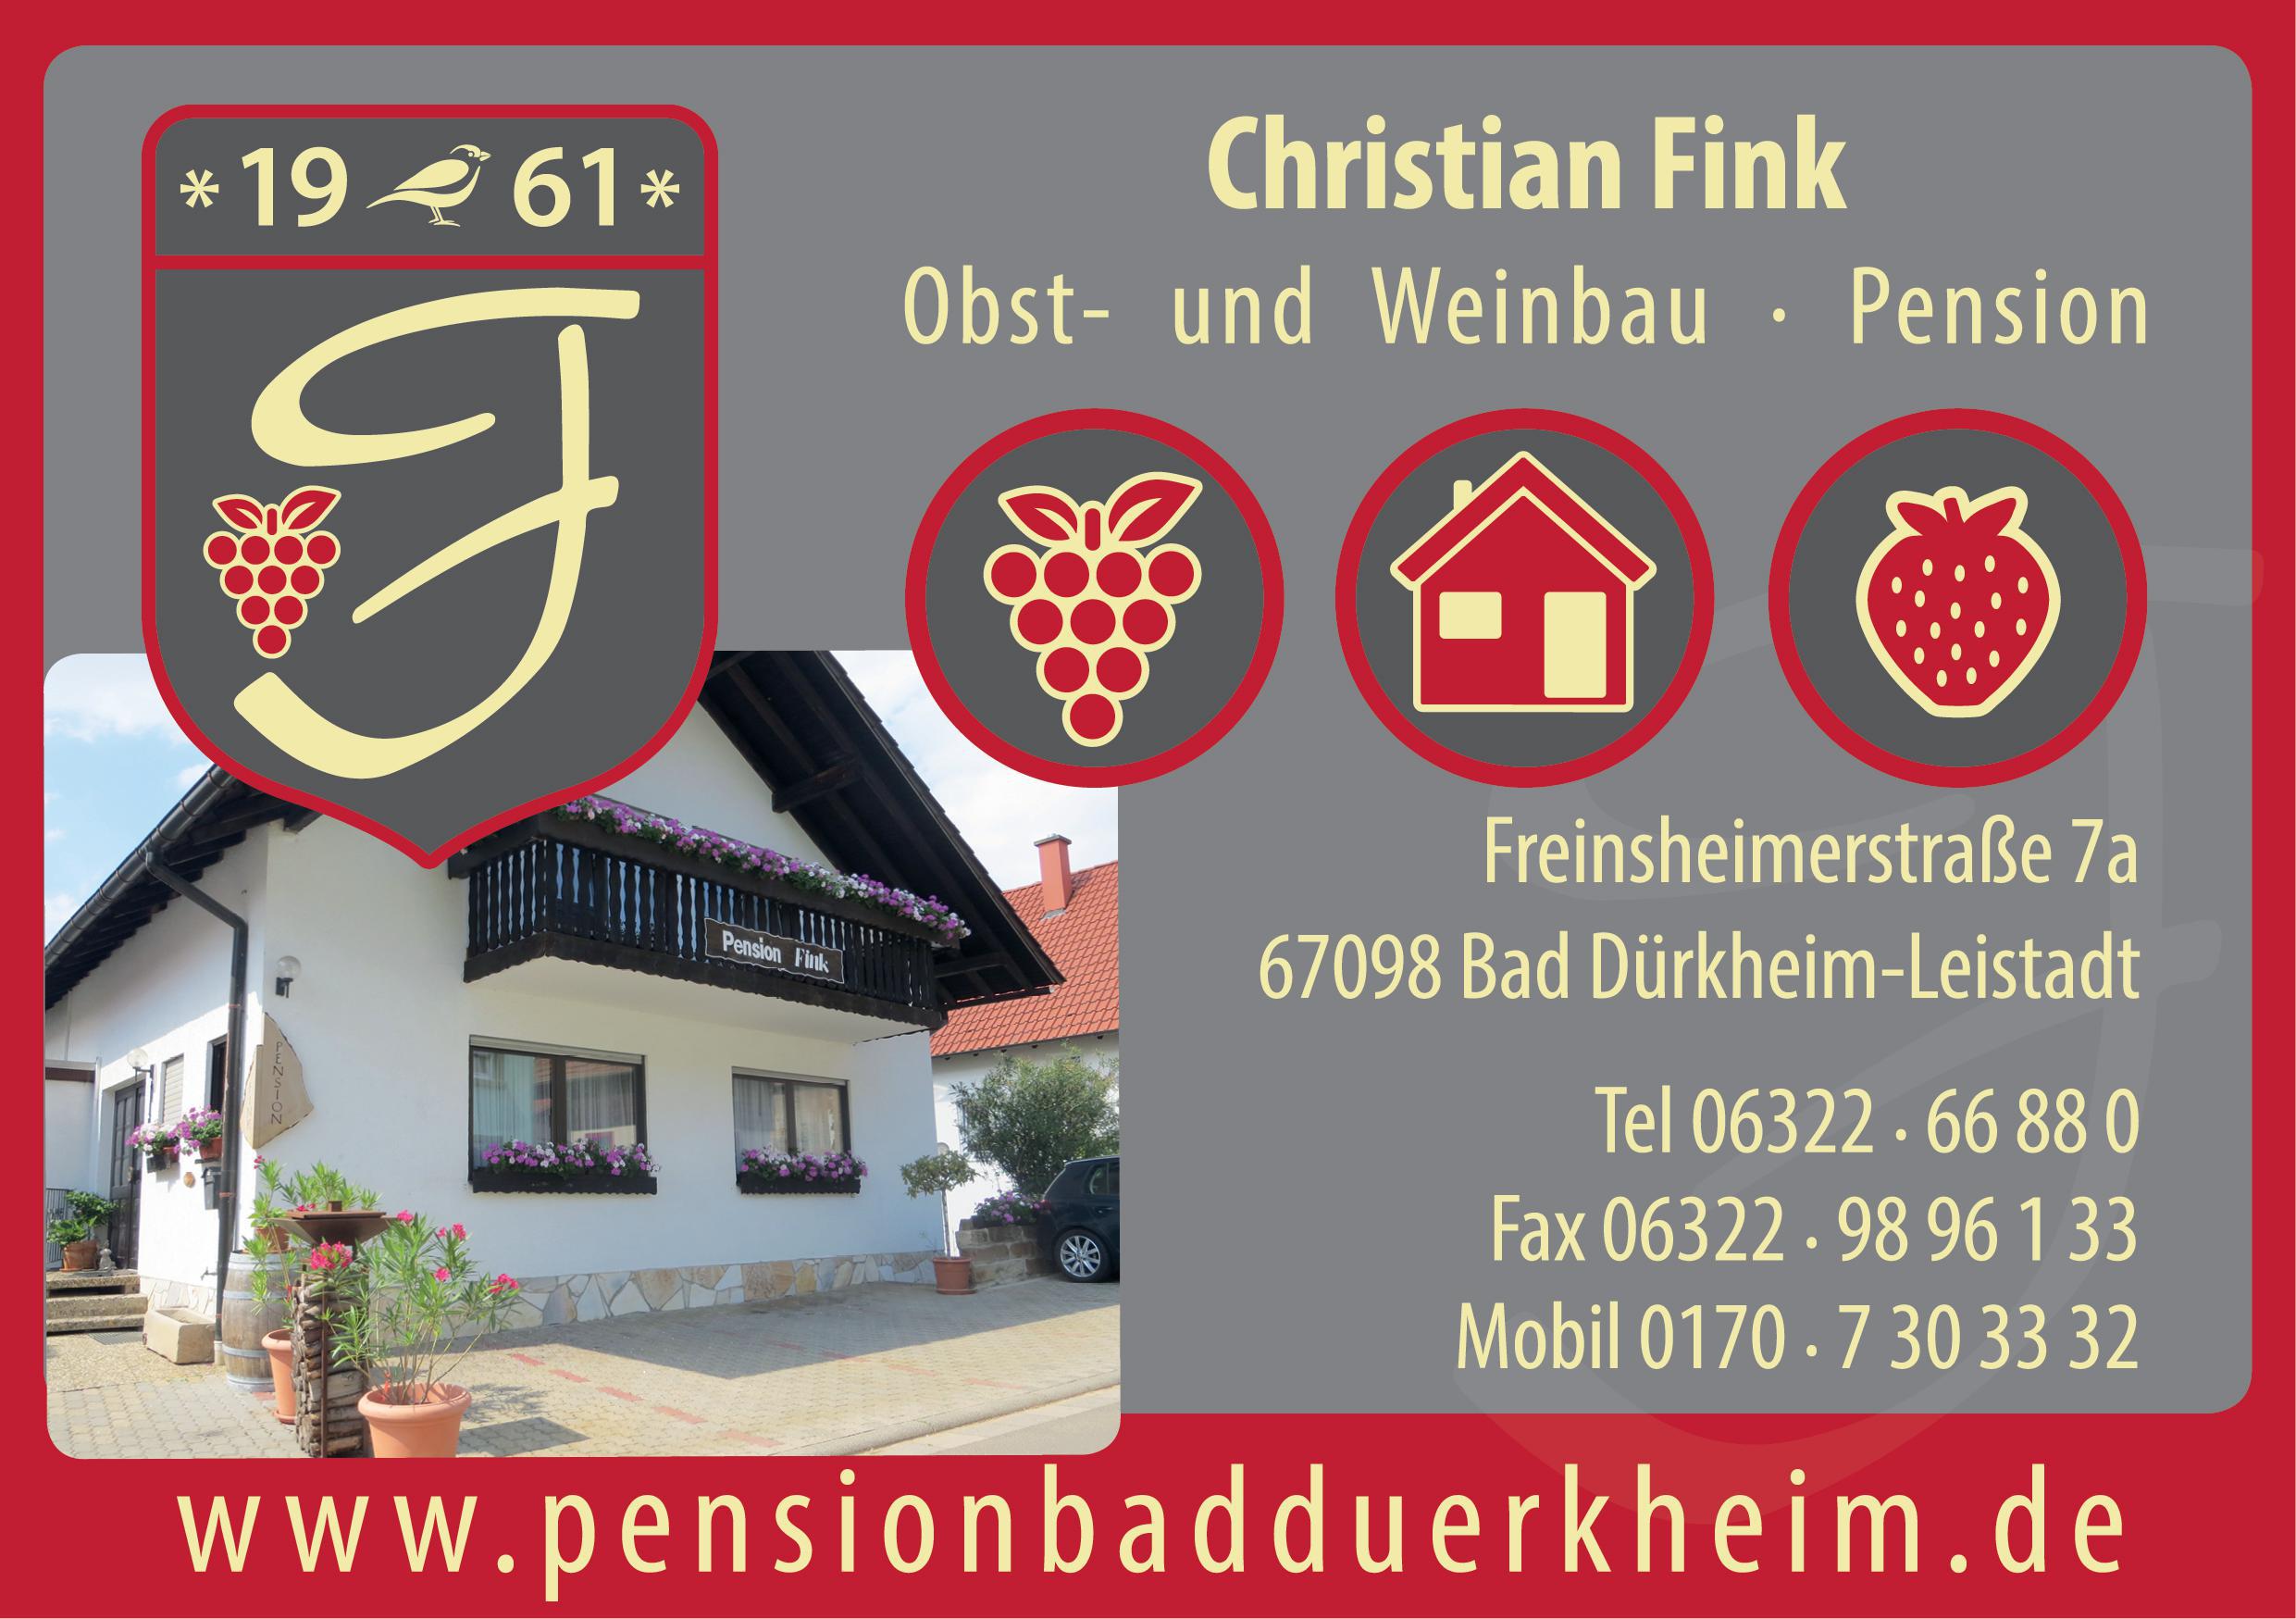 Pension Fink